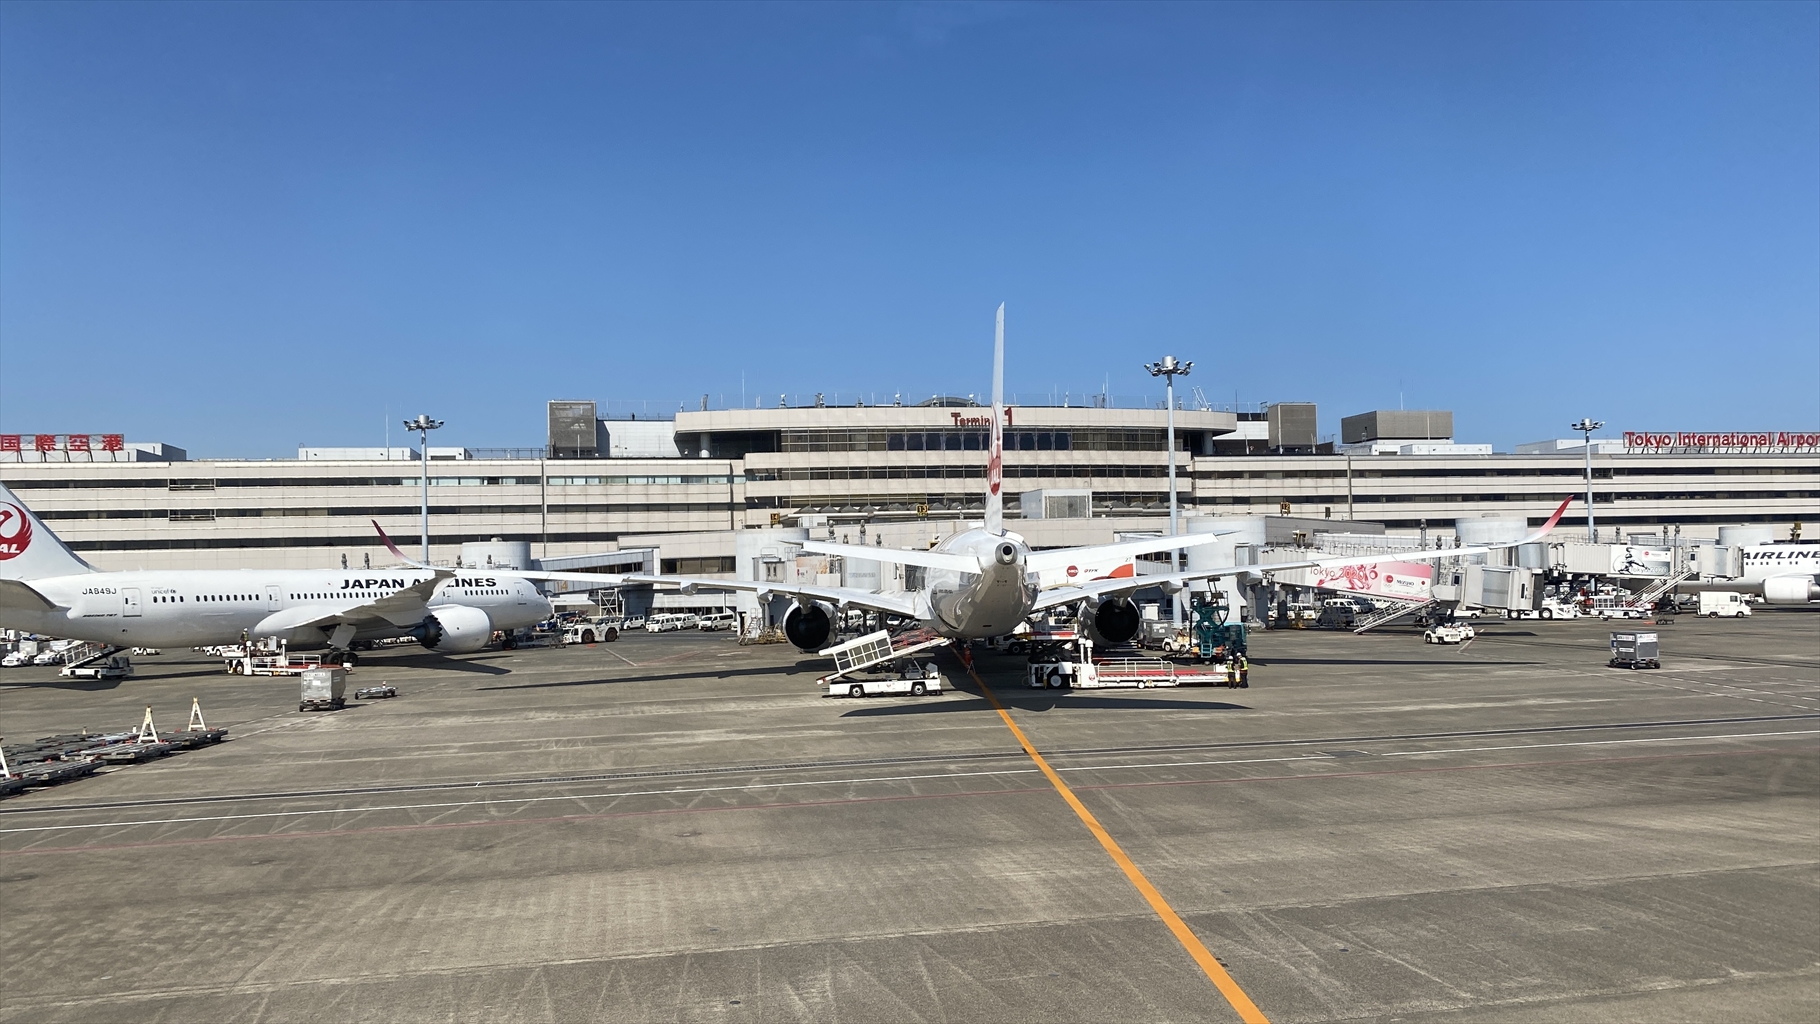 エアバスA350-900型機 JL919 沖縄(那覇)～羽田 ファーストクラス 搭乗記 01JUN21